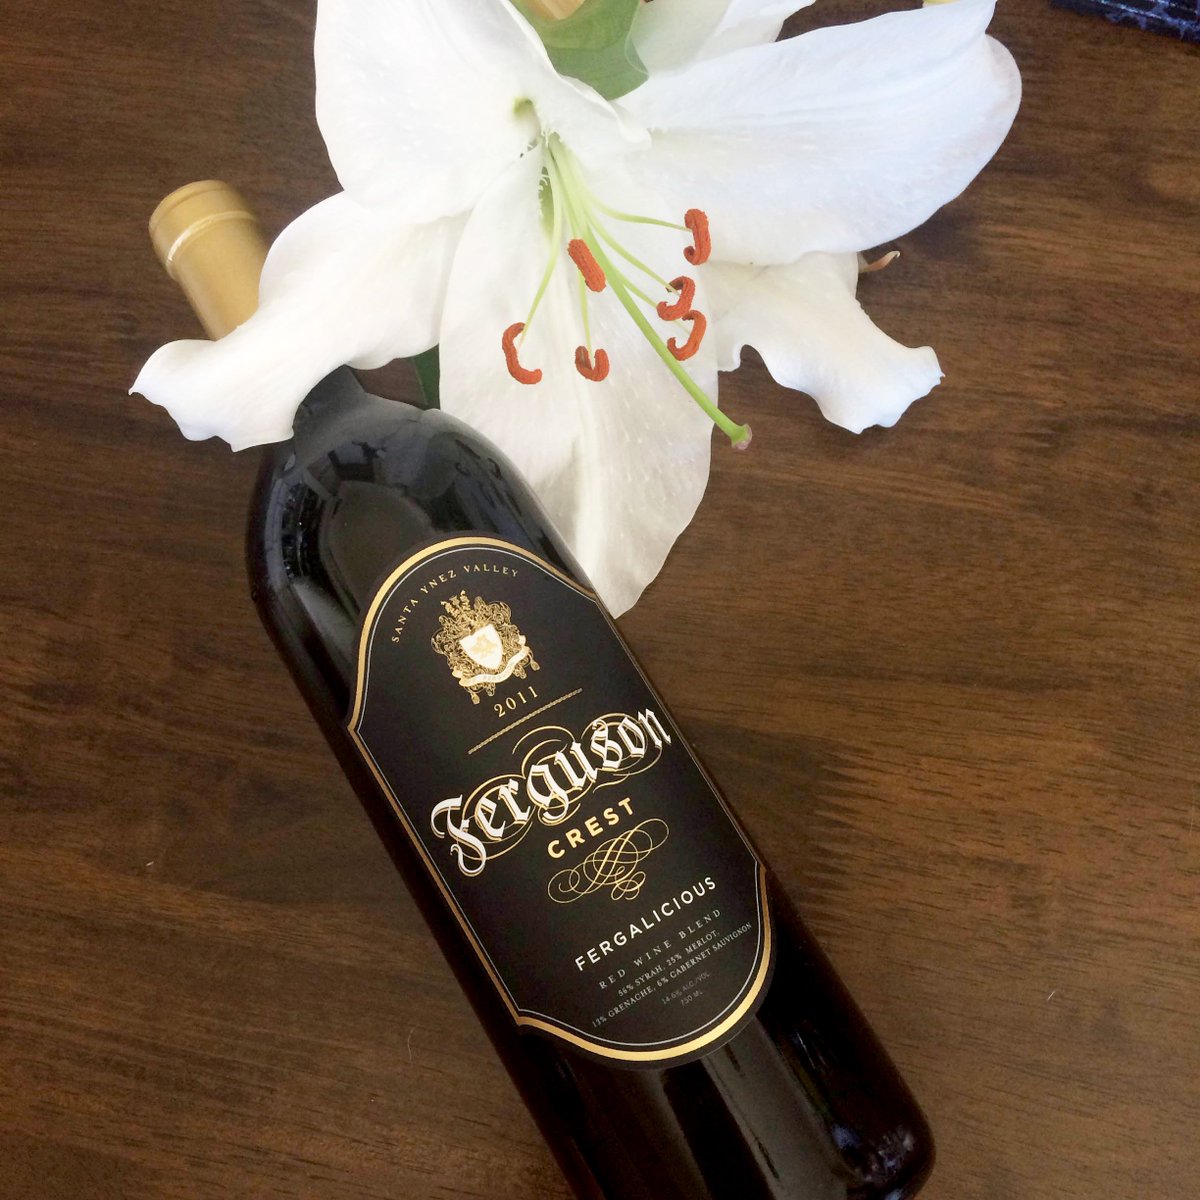 RT @FergusonCrest: #TakeTime 2 #smelltheflowers & taste the #wine.????????#fergalicious #redwine #fergie #winetasting https://t.co/6ckc3dgwTq htt…